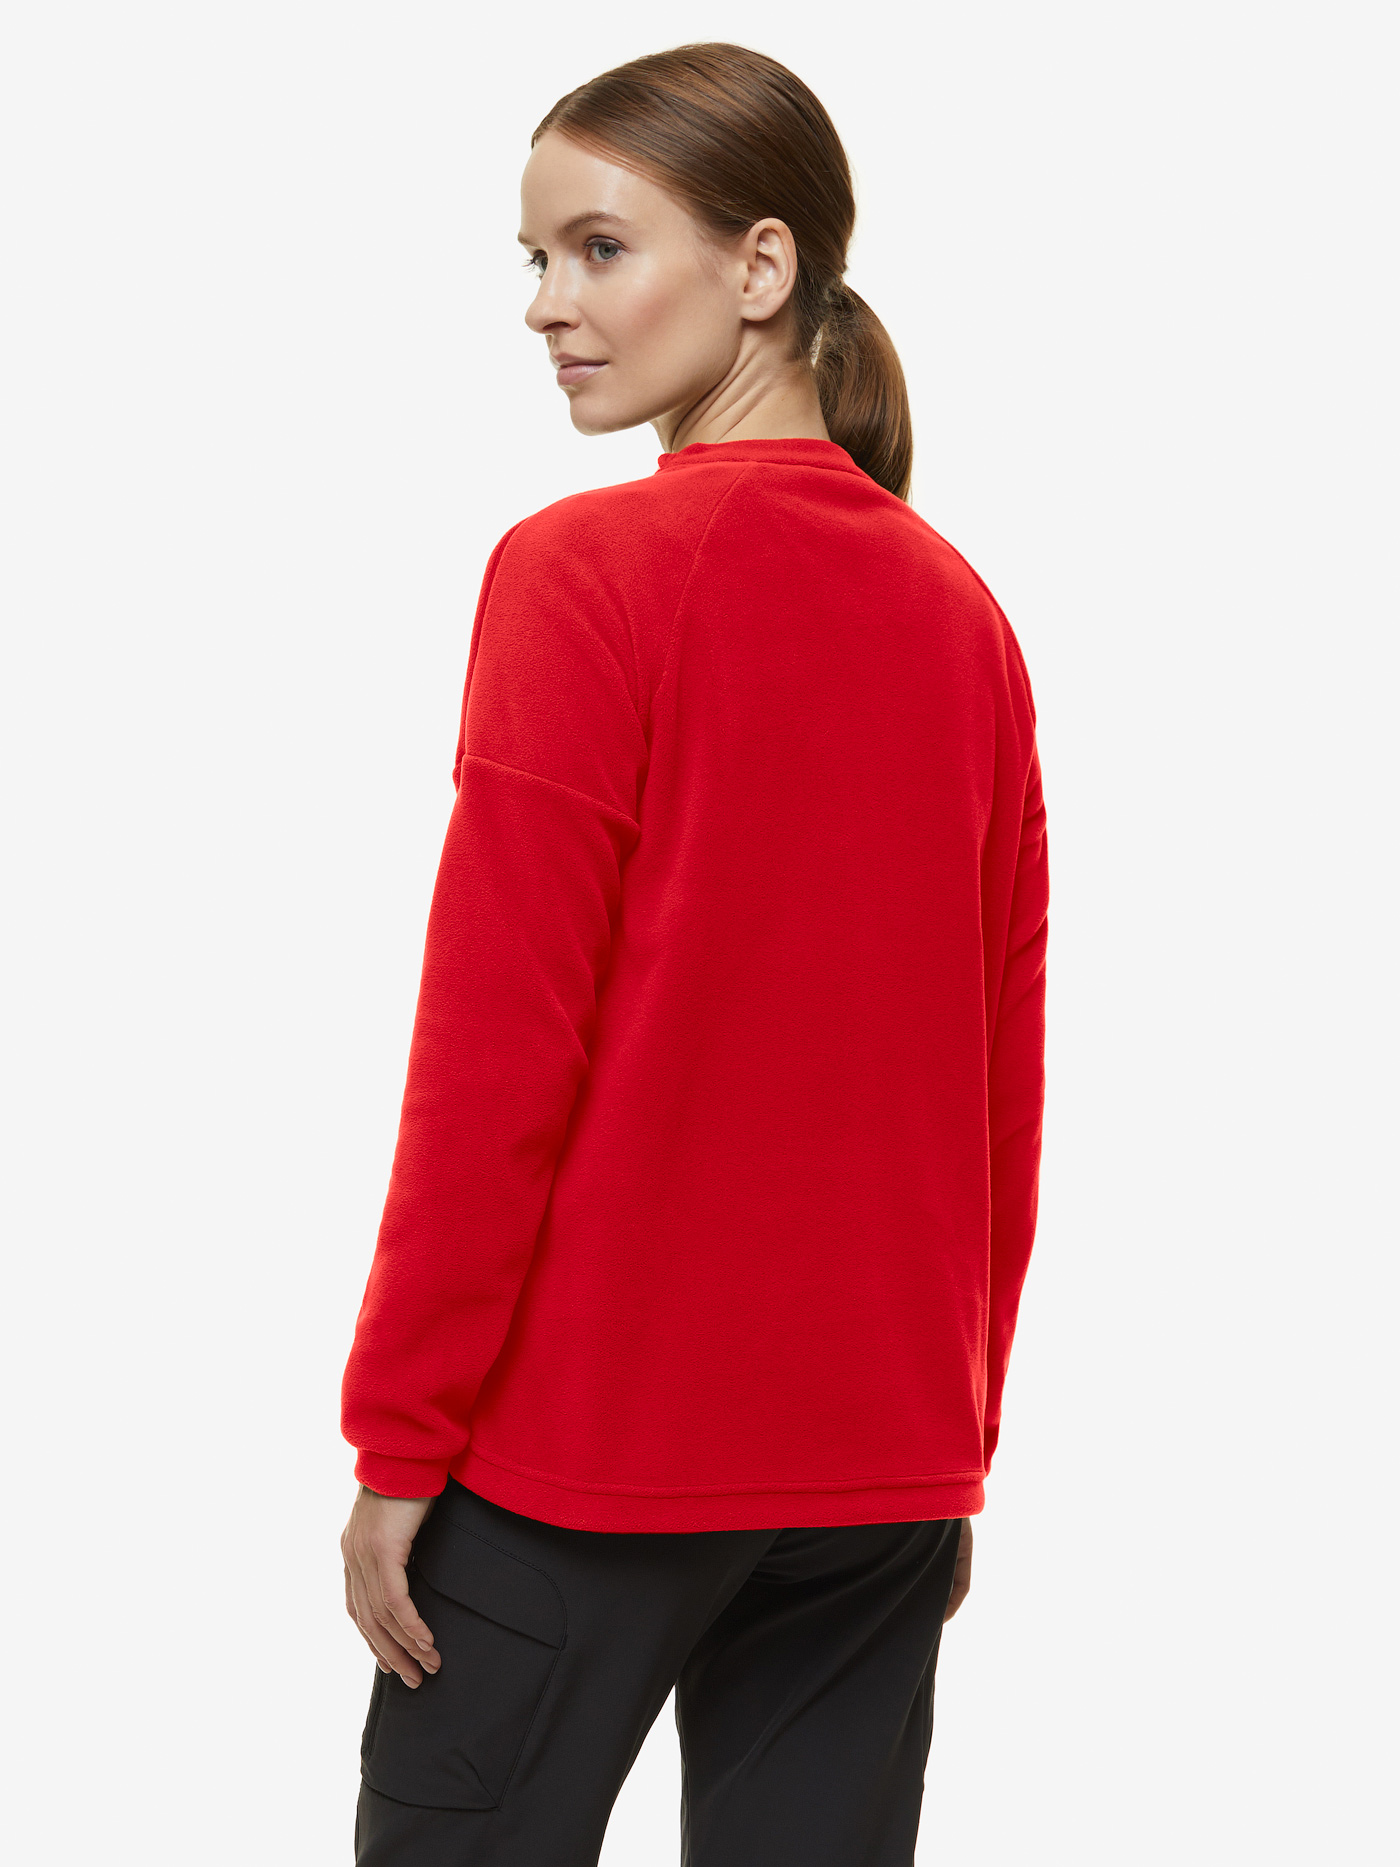 Куртка BASK, размер 42, цвет красный 21008-9205-042 Micro lj v2 - фото 3